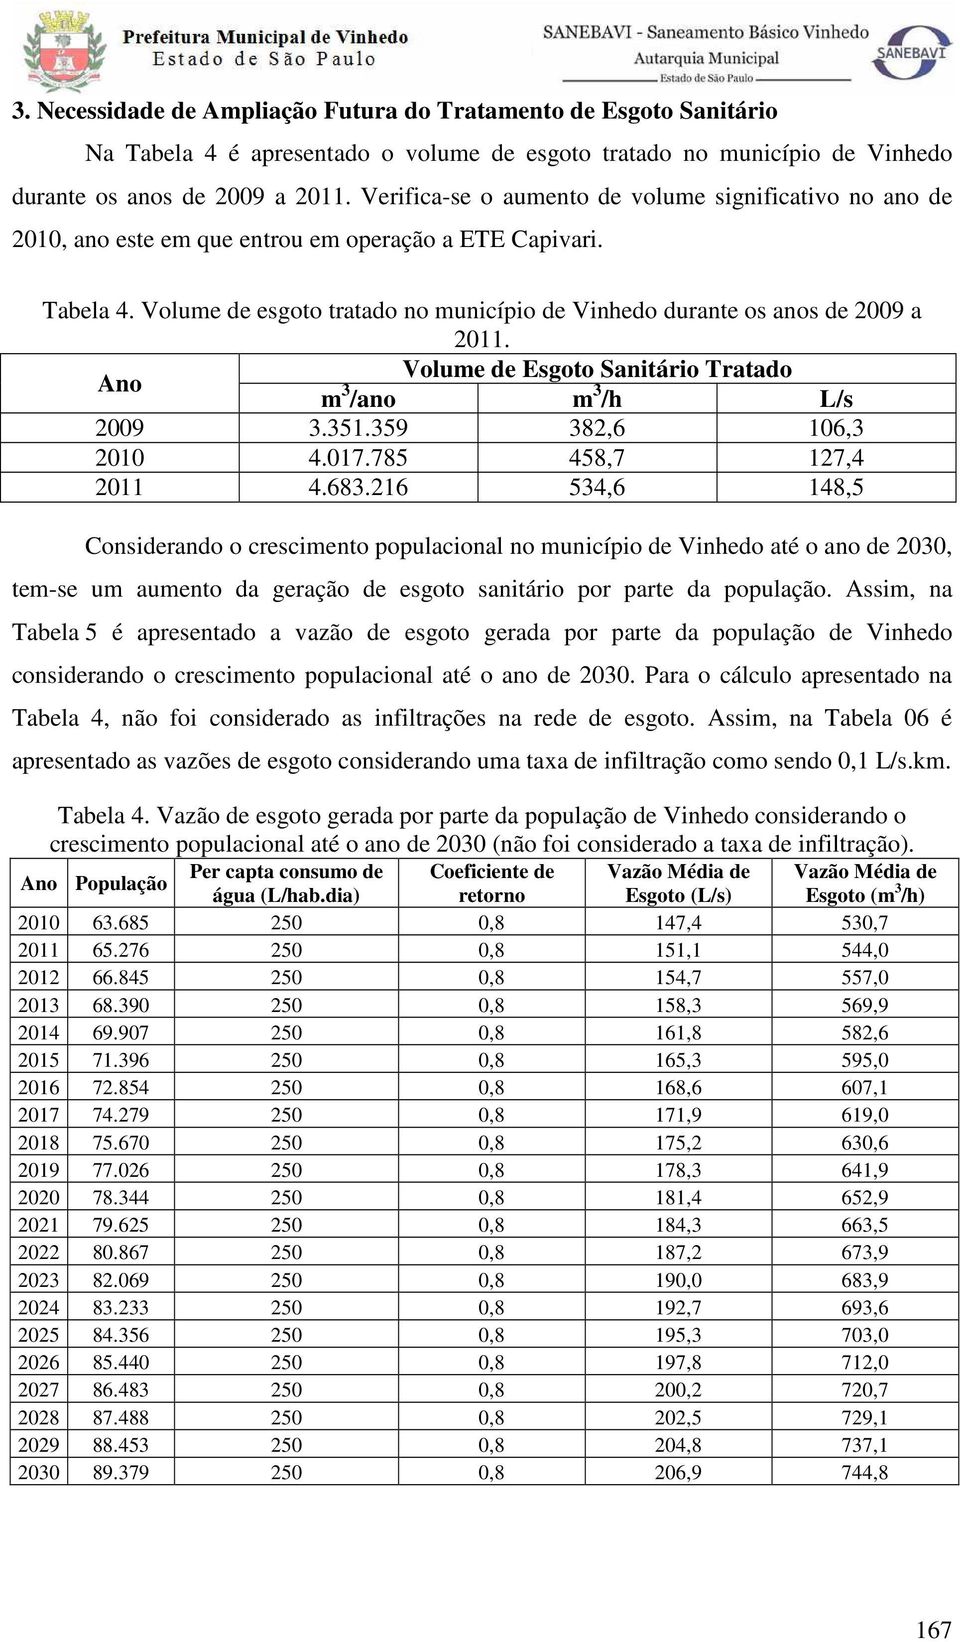 Volume de esgoto tratado no município de Vinhedo durante os anos de 2009 a 2011. Ano Volume de Esgoto Sanitário Tratado m 3 /ano m 3 /h L/s 2009 3.351.359 382,6 106,3 2010 4.017.